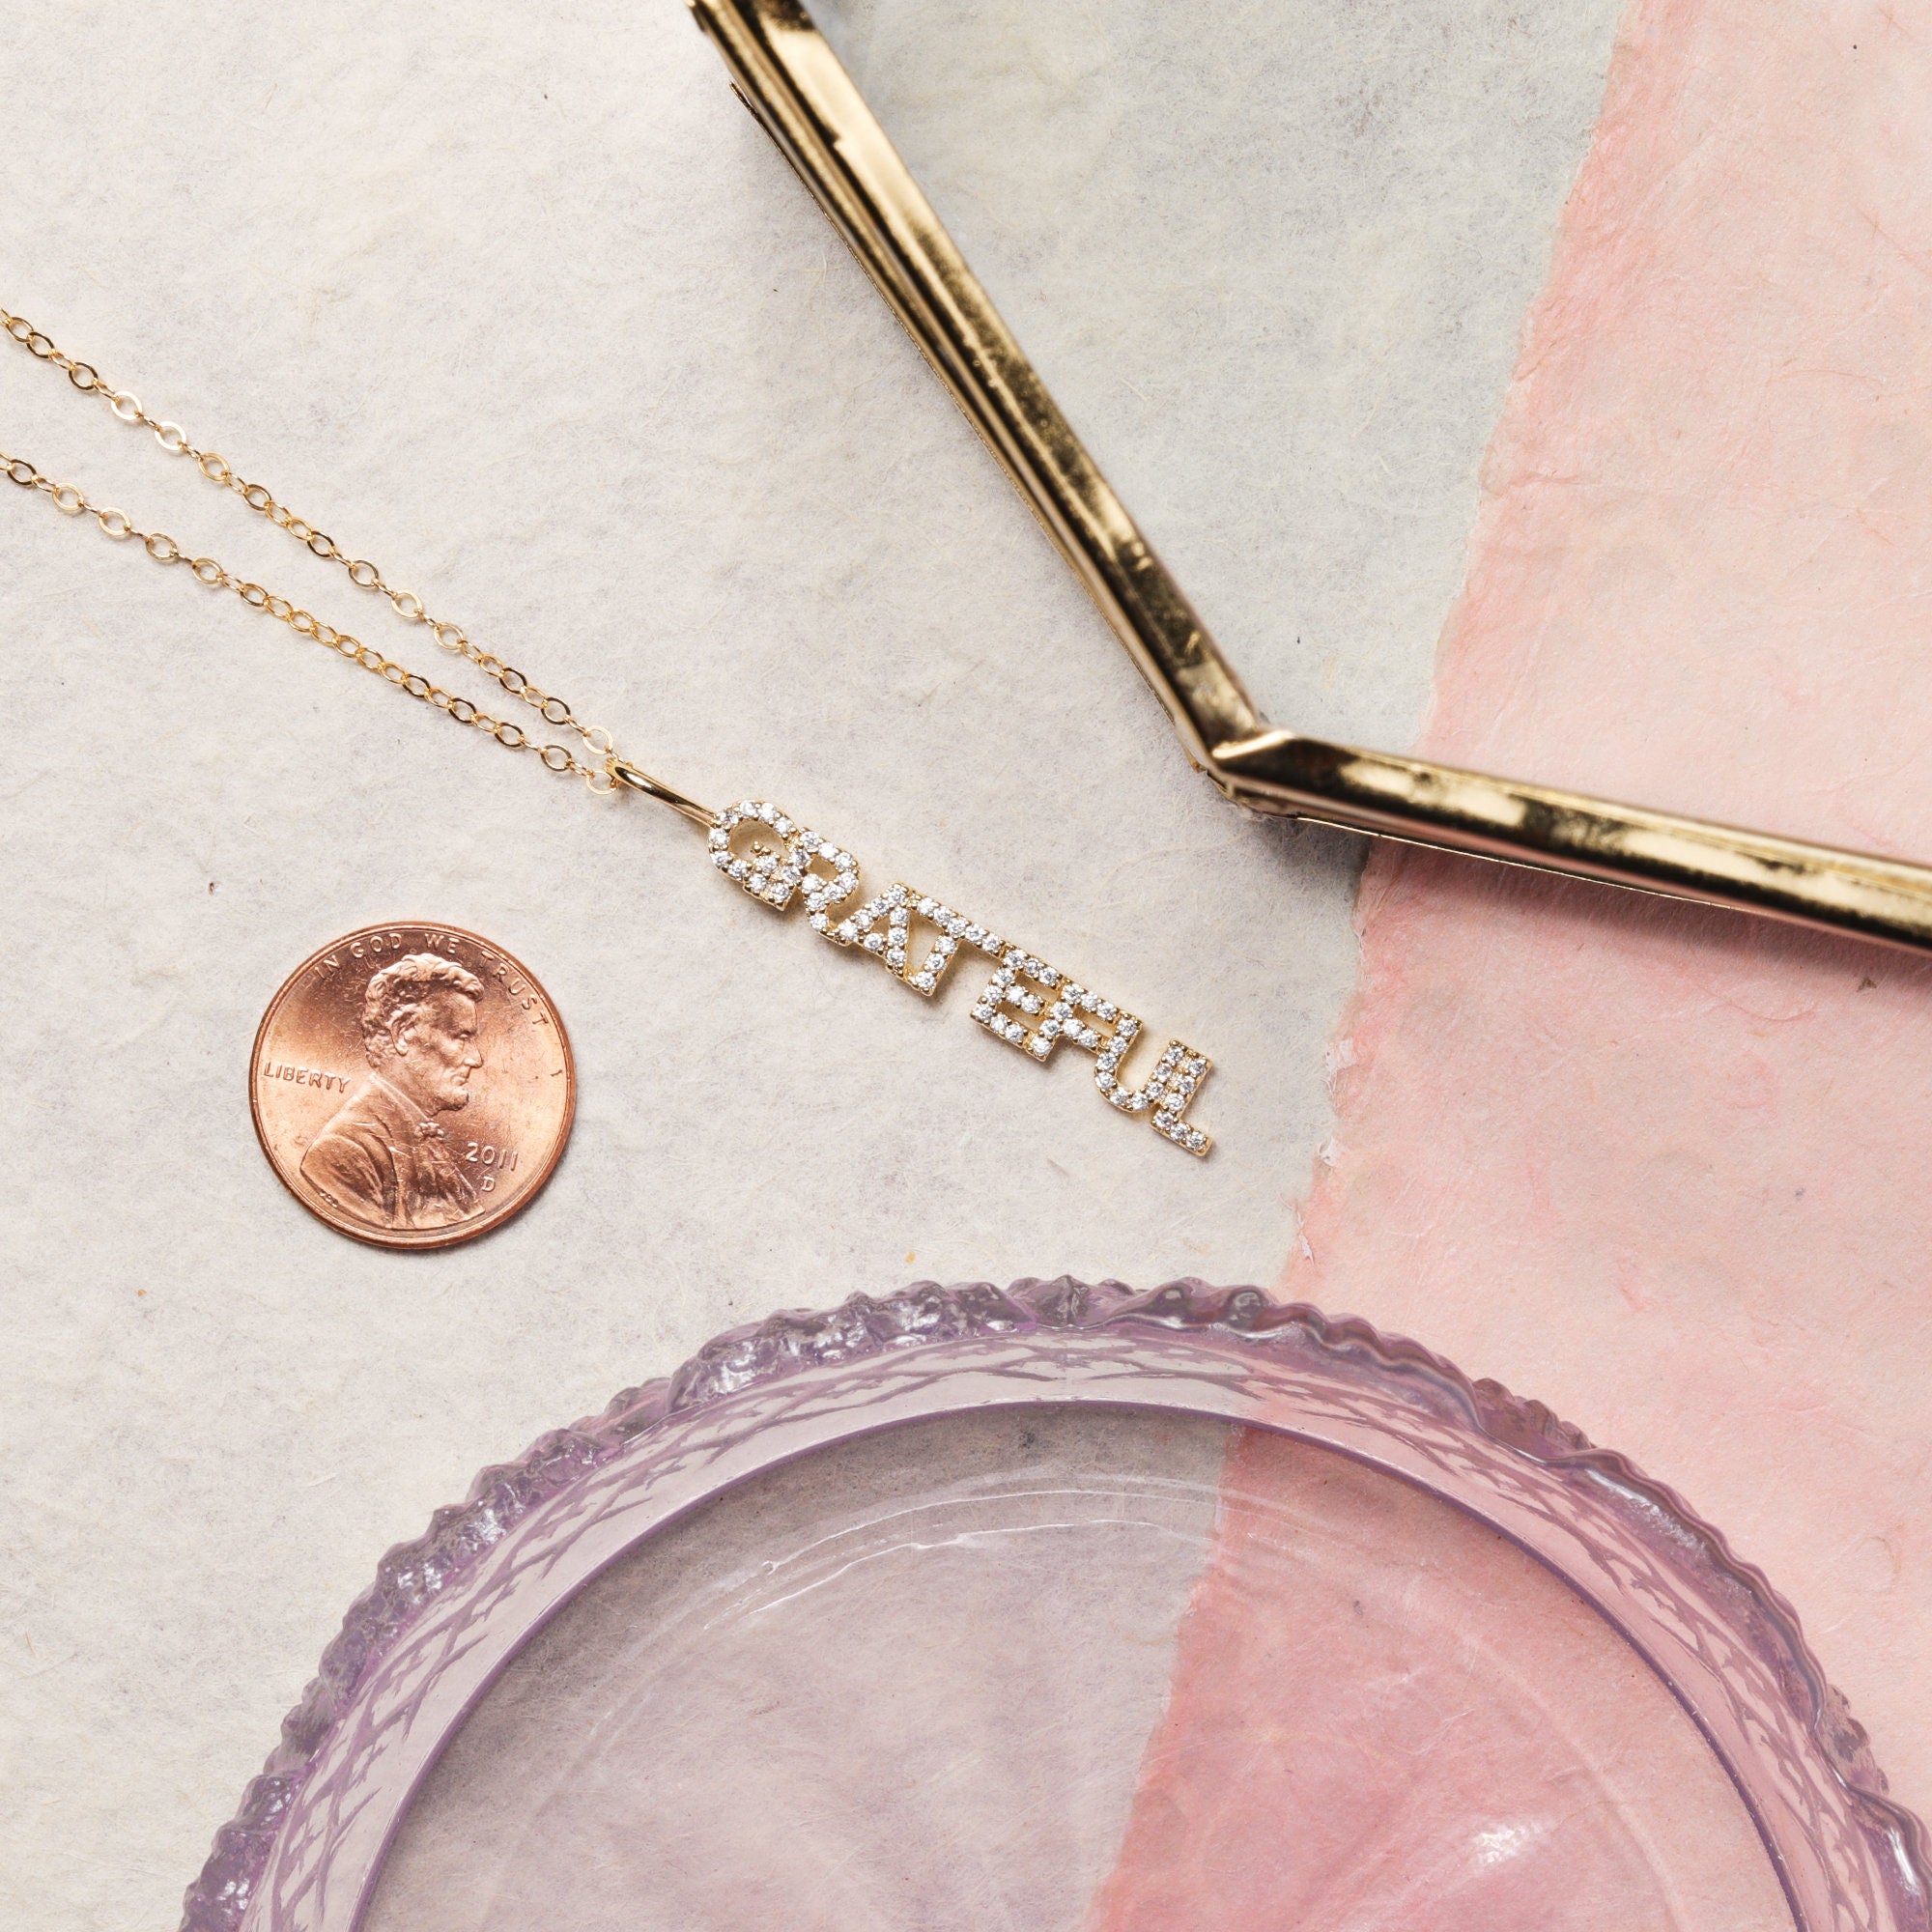 Grateful Pave CZ Gold Pendant Necklace Necklaces Soul & Little Rose   